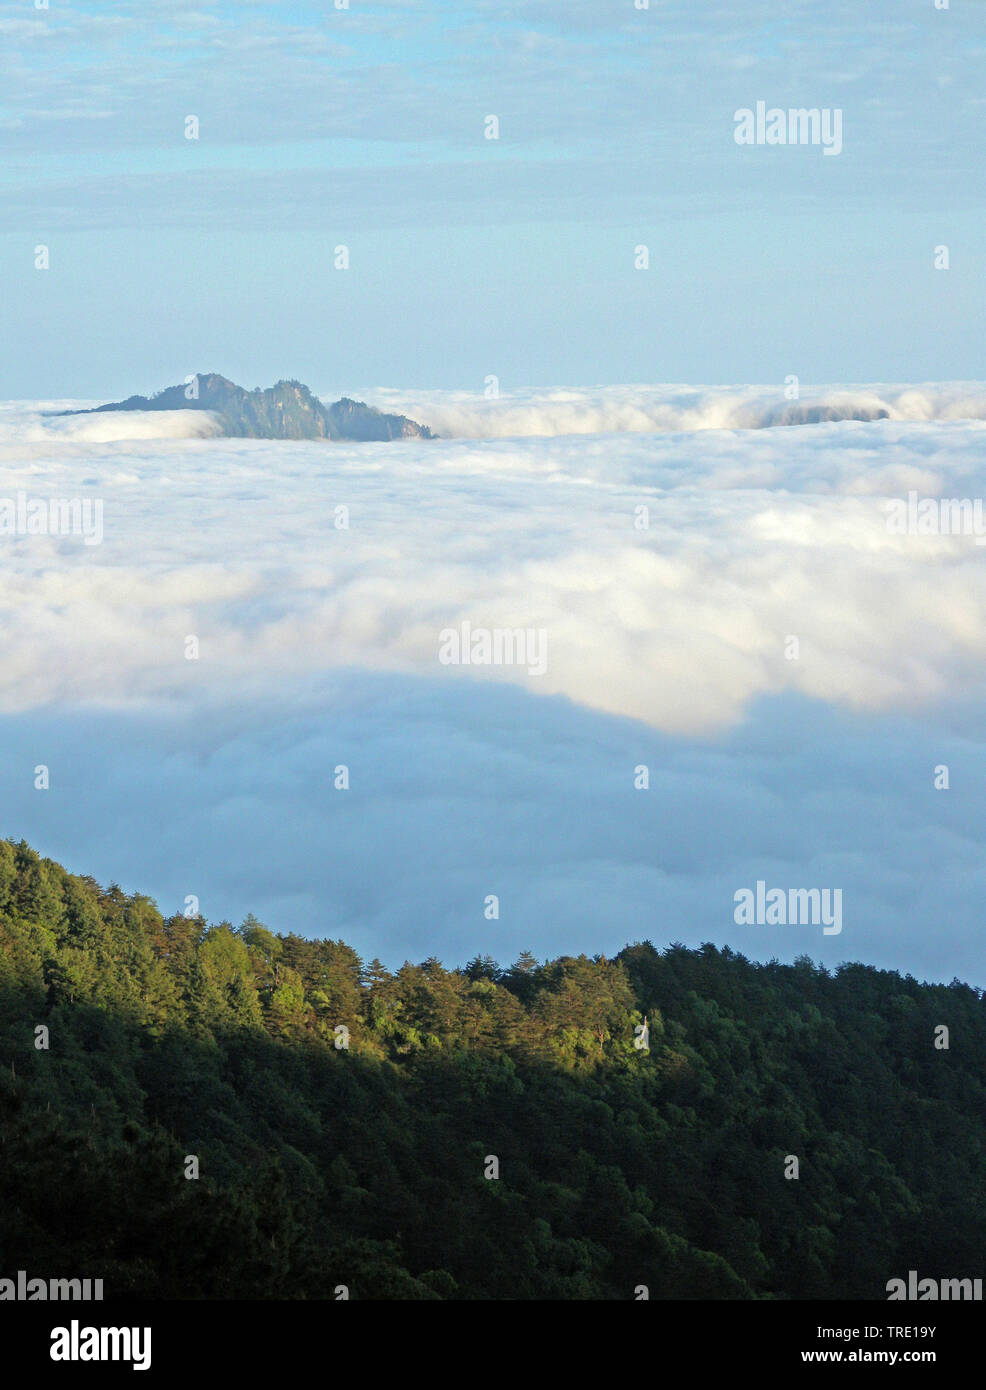 landscape in Taiwan, Alishan, Taiwan Stock Photo